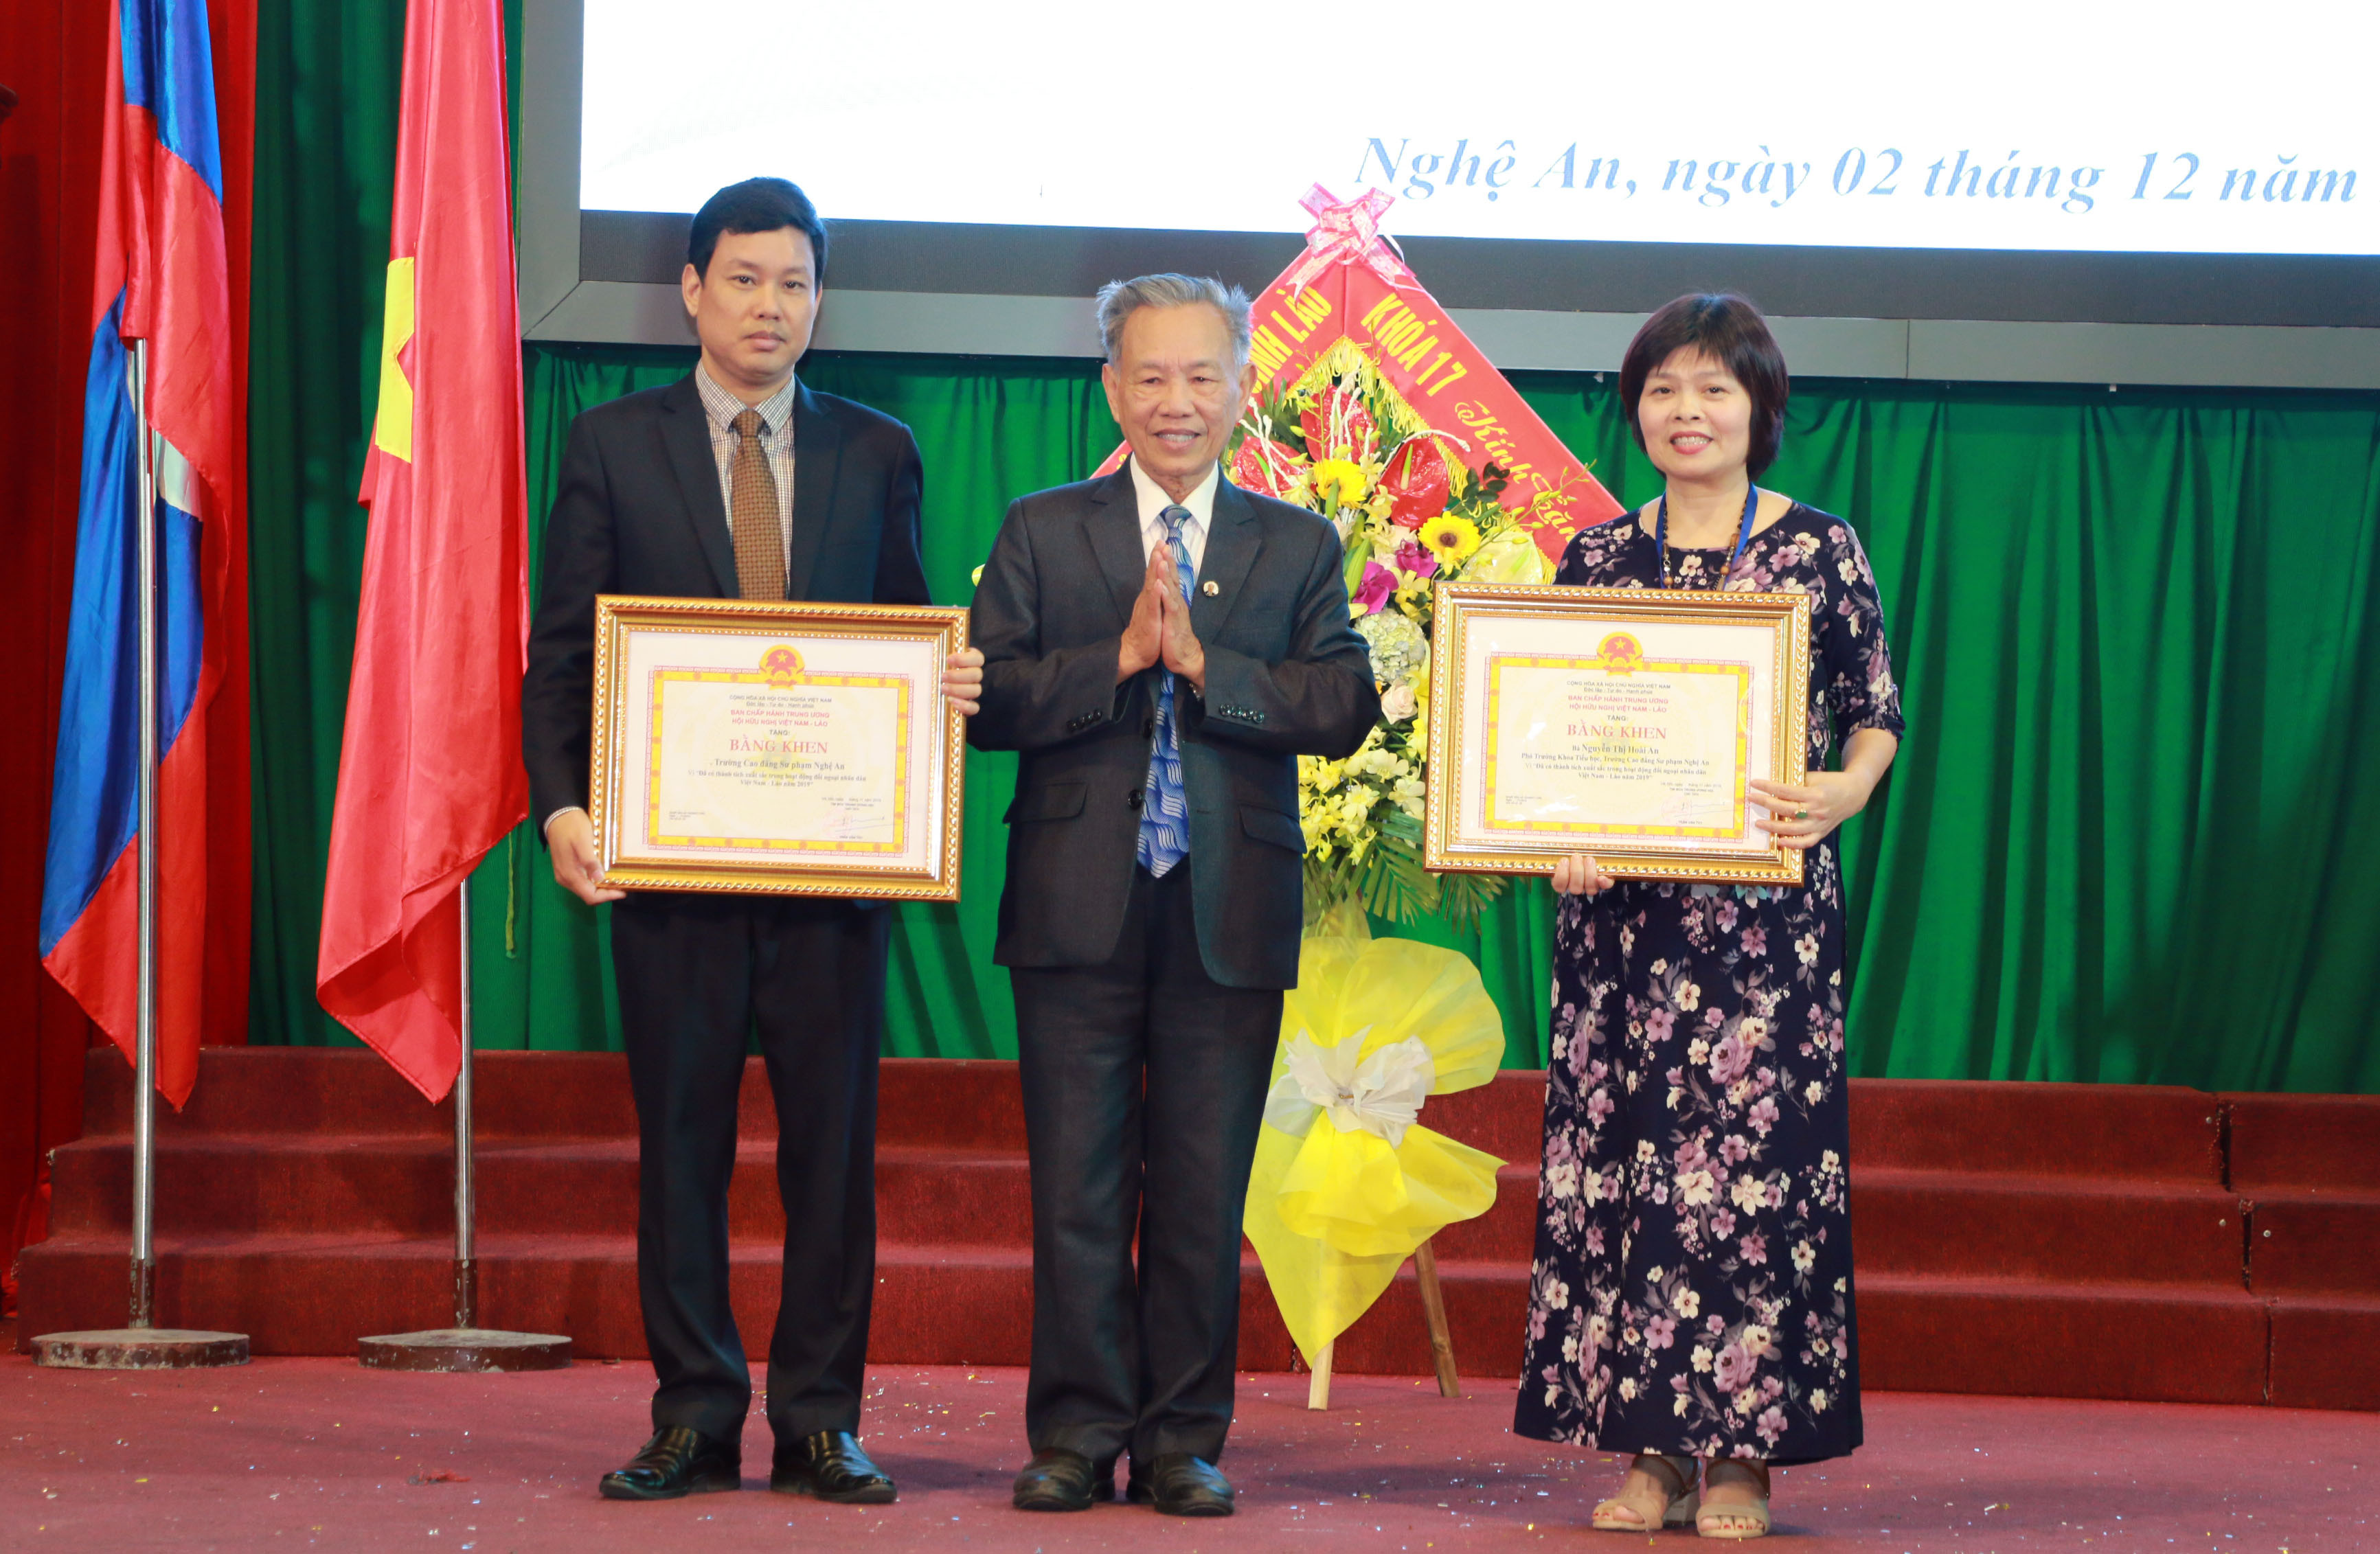 Đại diện Hội Hữu nghị Việt Nam Lào trao bằng khen của Trung ương Hội cho tập thể và cá nhân trường CĐSP Nghệ An. Ảnh: Mỹ Hà